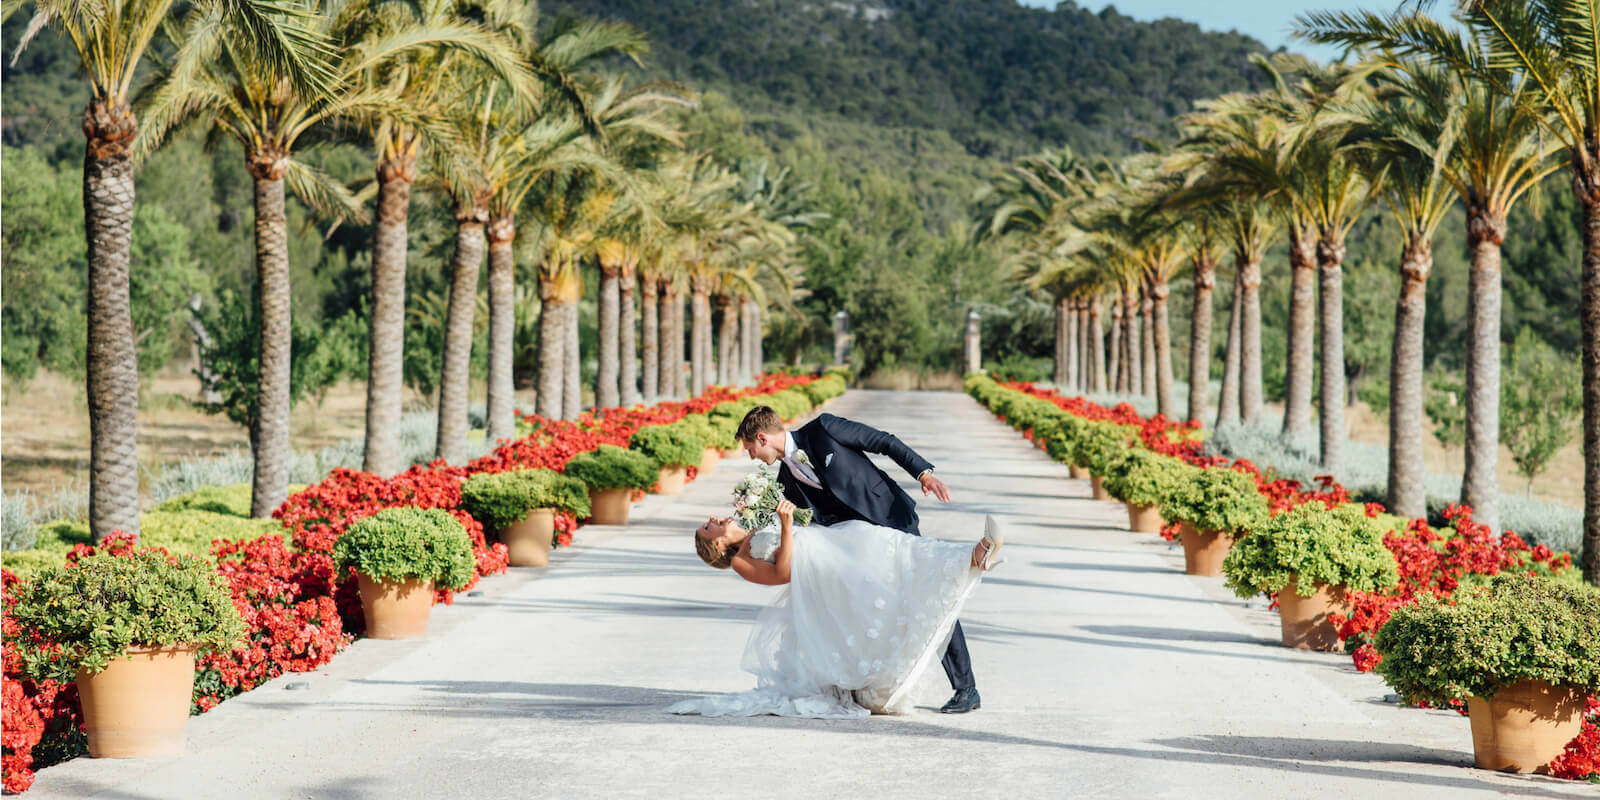 Ein Brautpaar tanzt in der Auffahrt des Luxushotels auf Mallorca